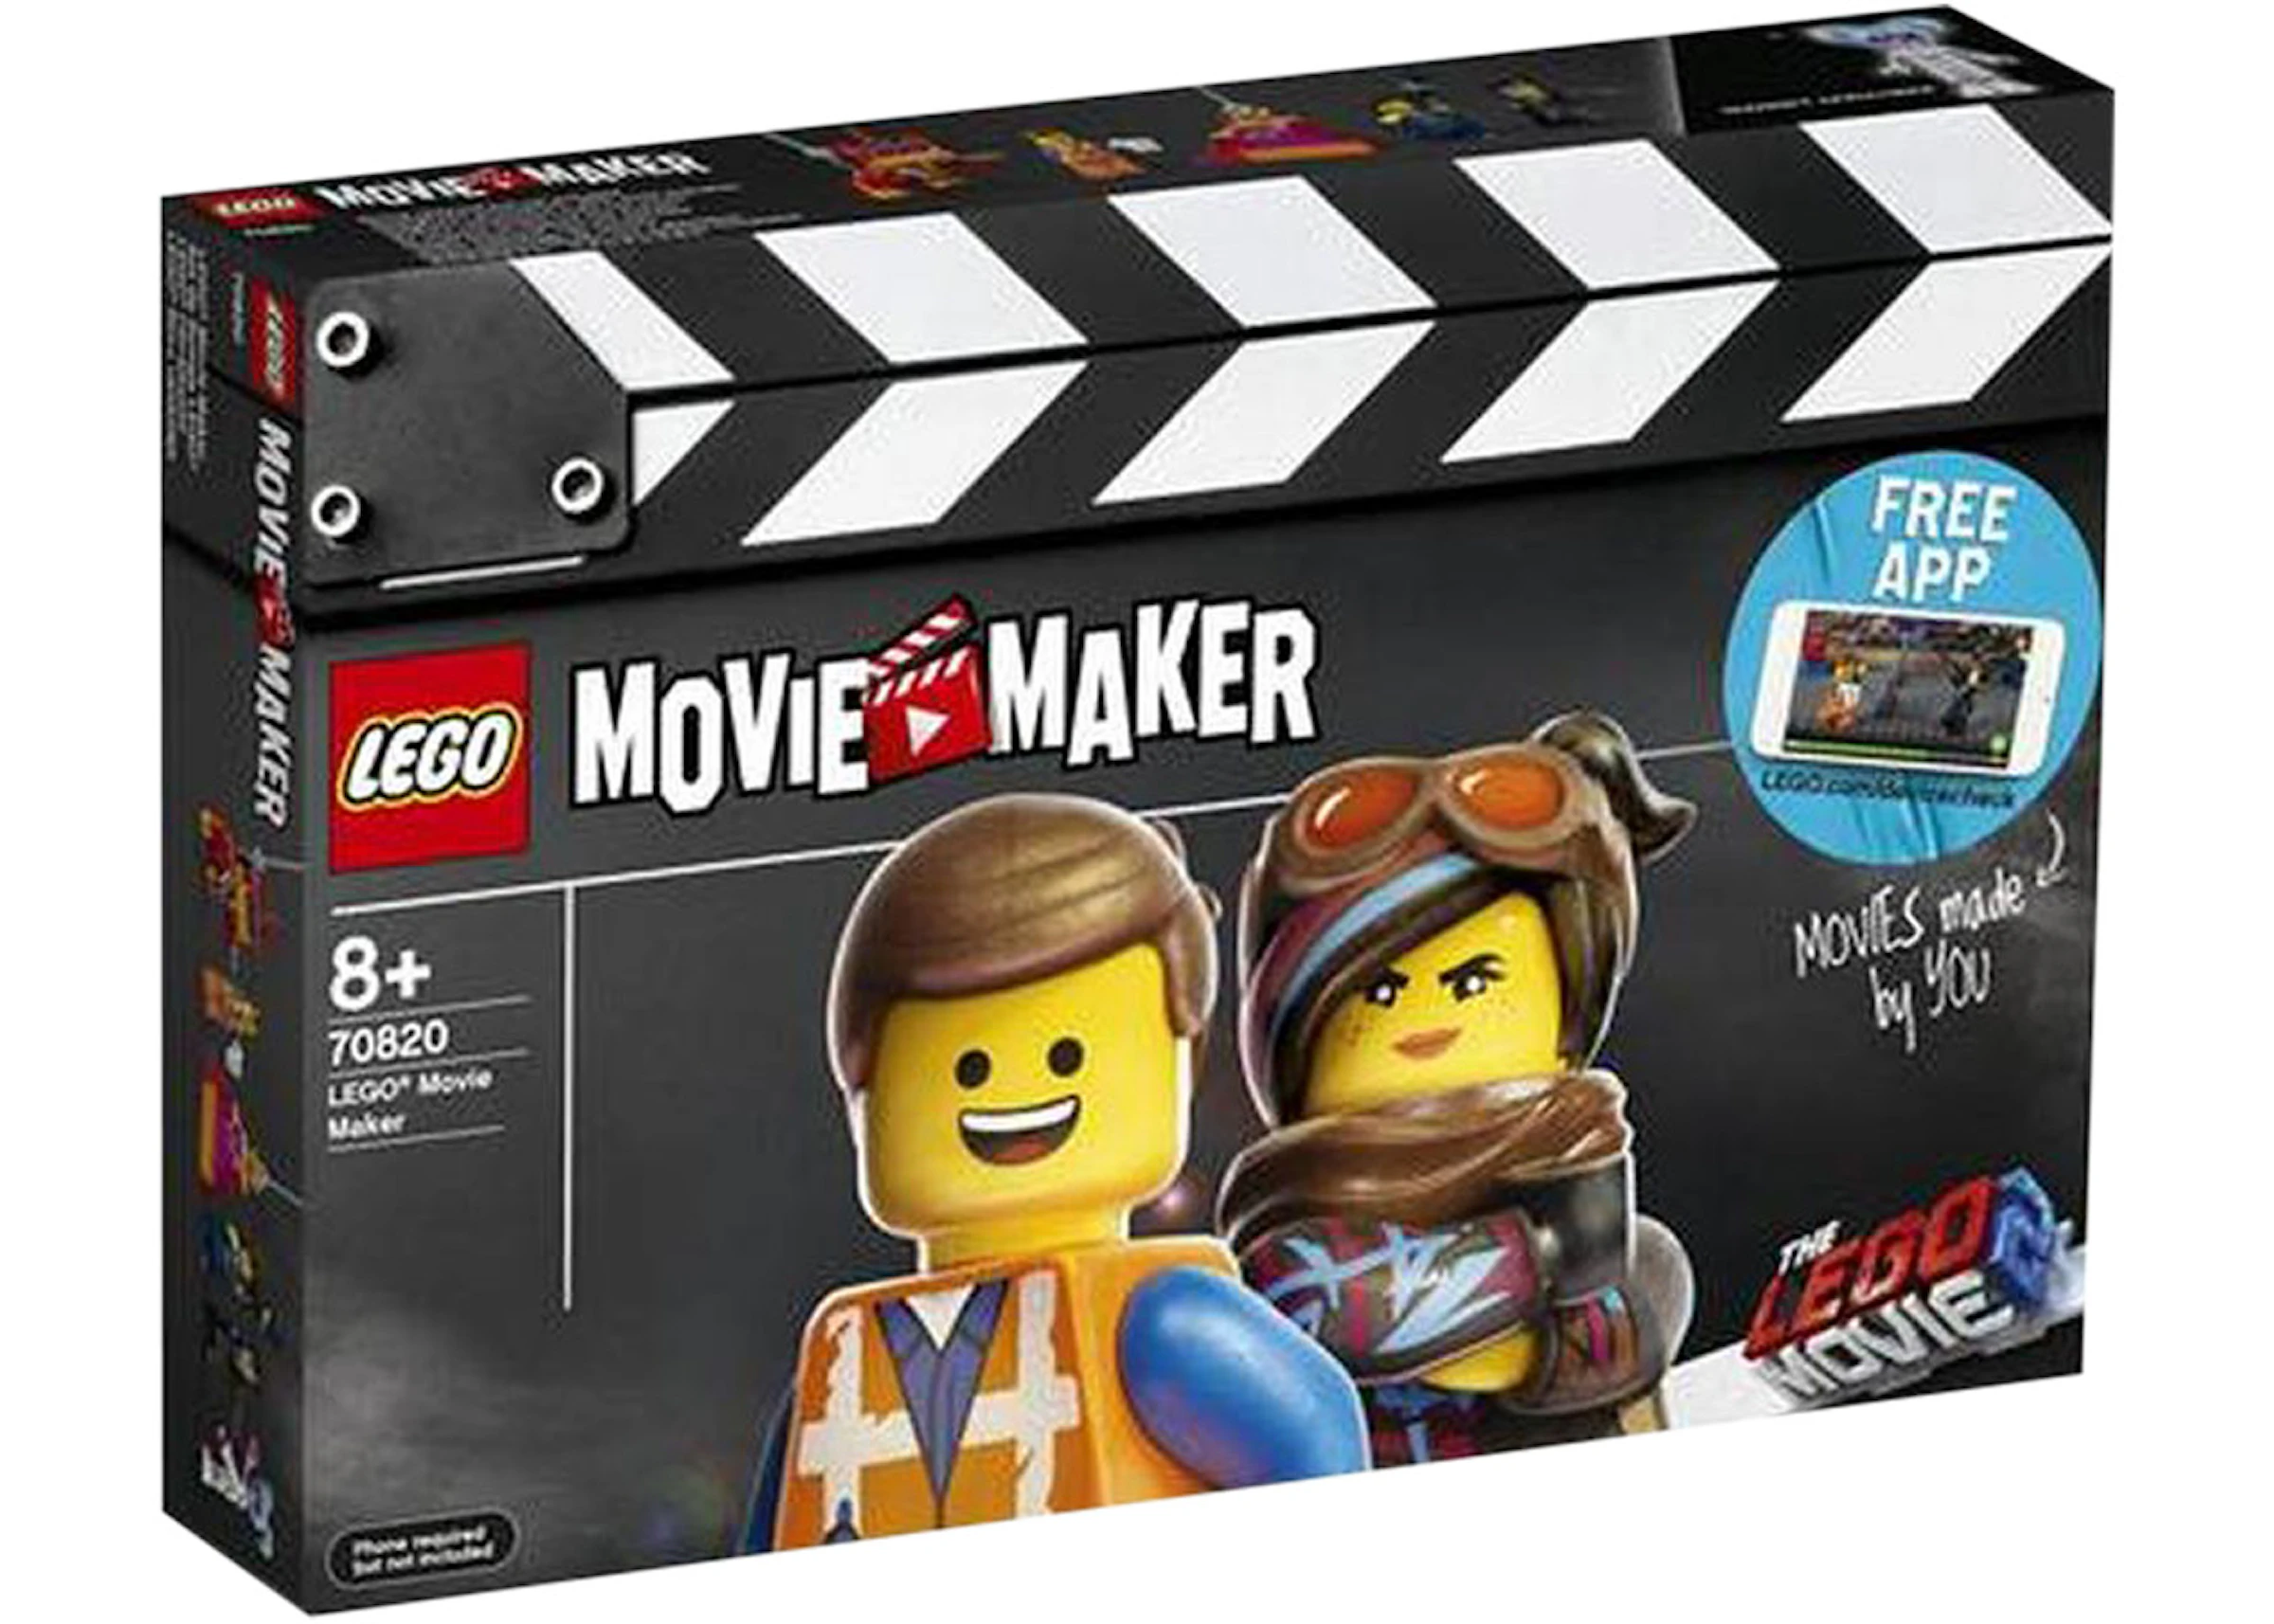 Lego The Lego Movie 2 Lego Movie Maker Set 70820 - Us